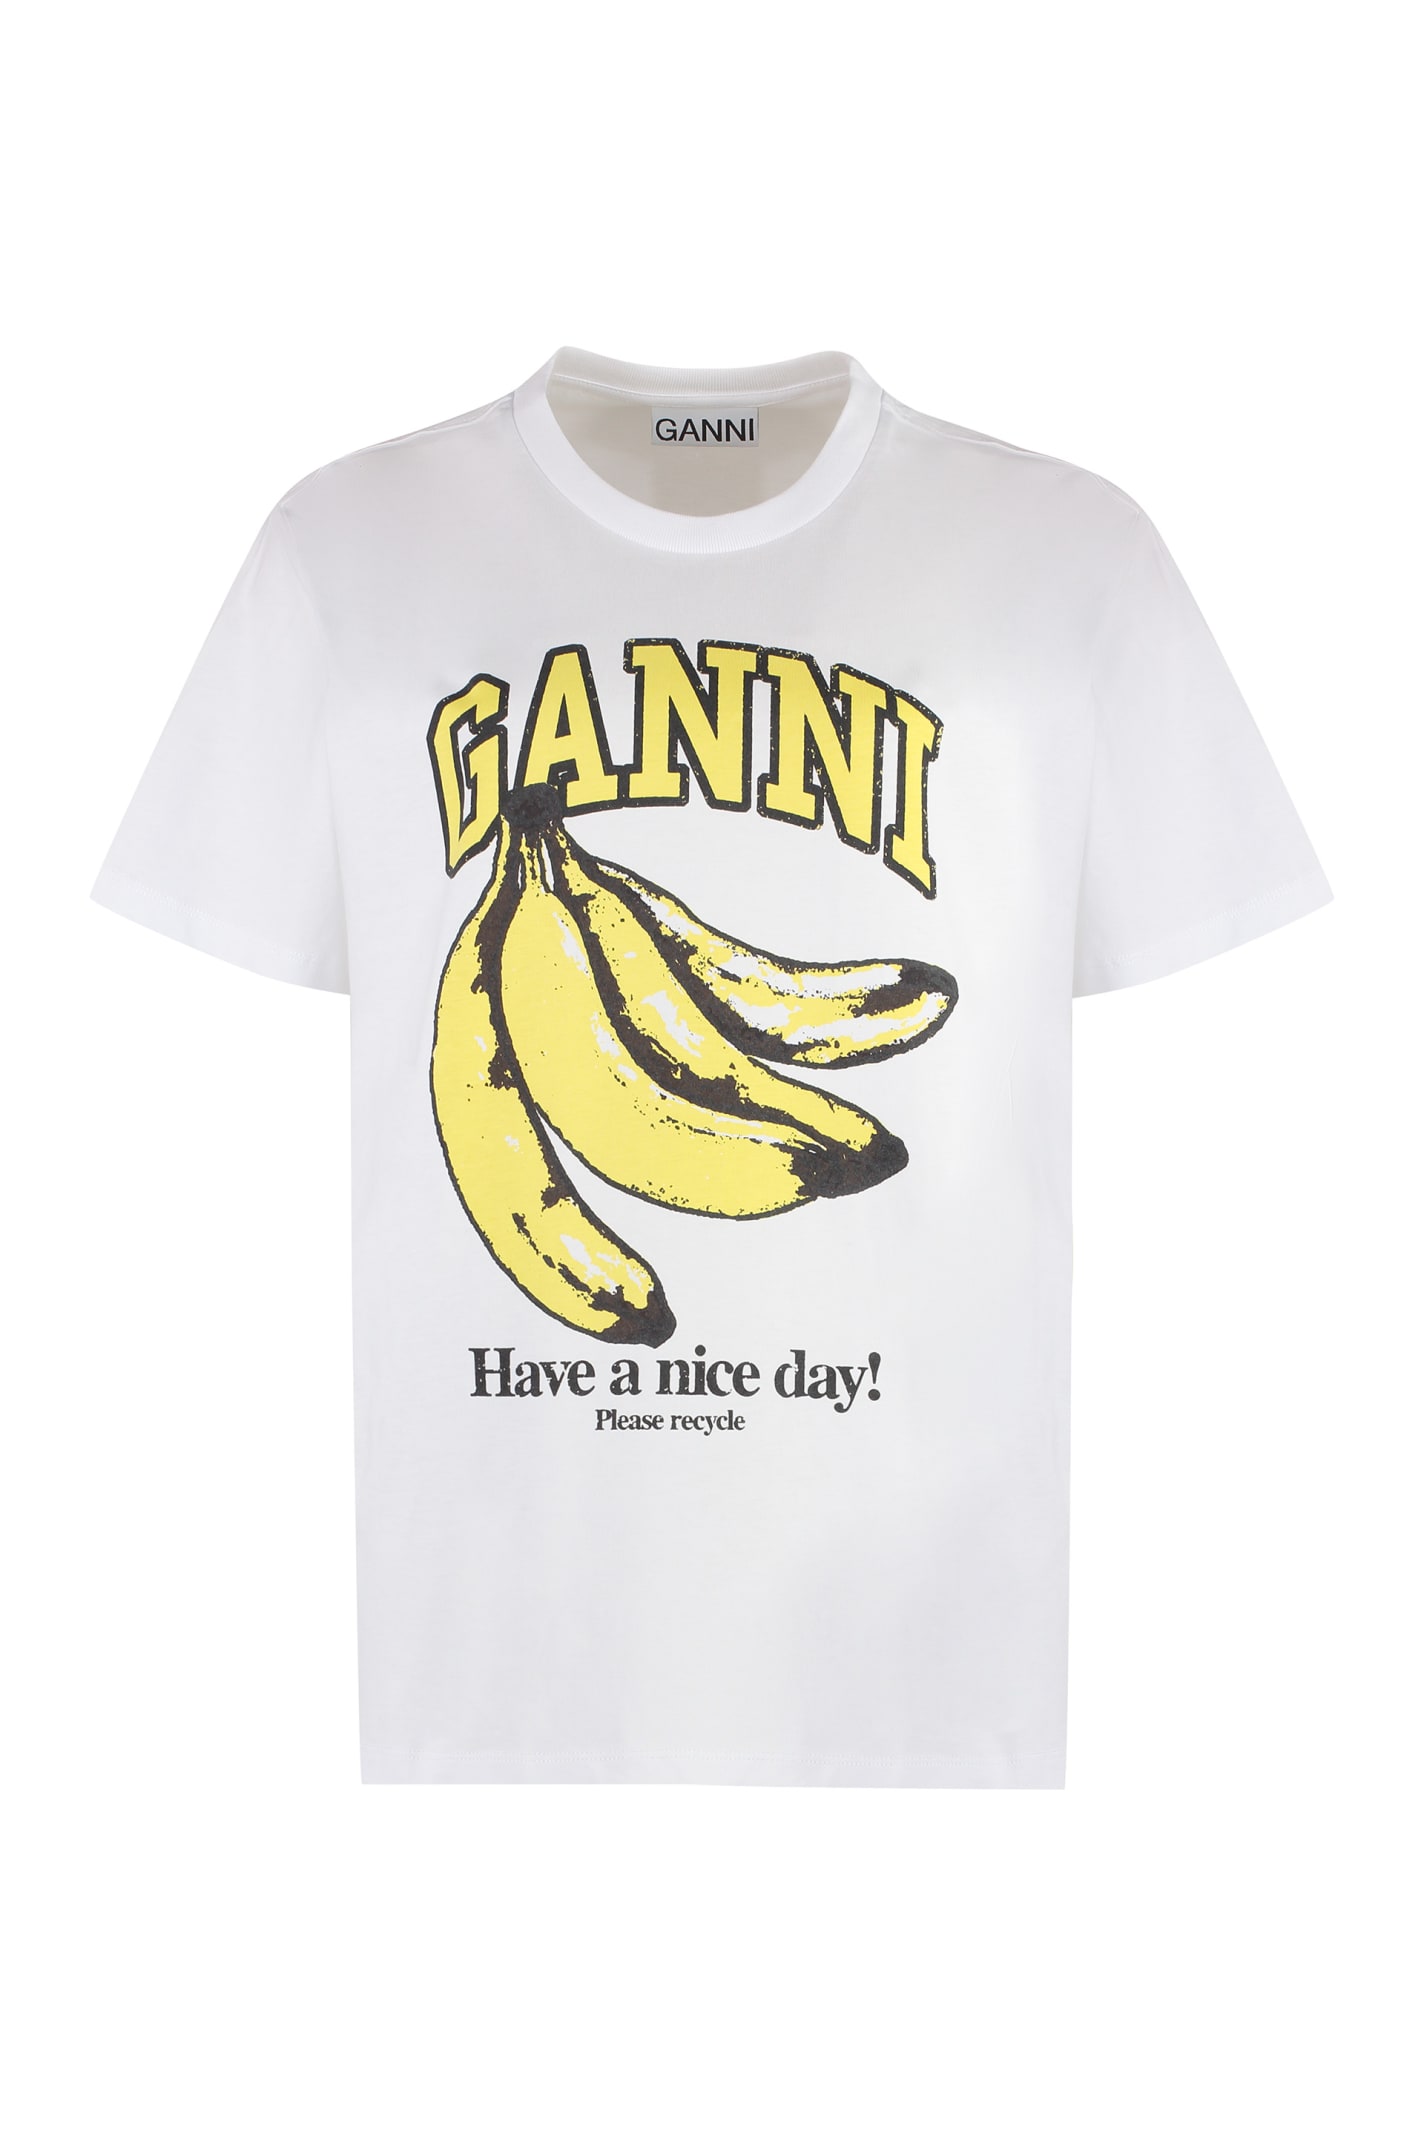 Ganni Cotton Crew-neck T-shirt In White